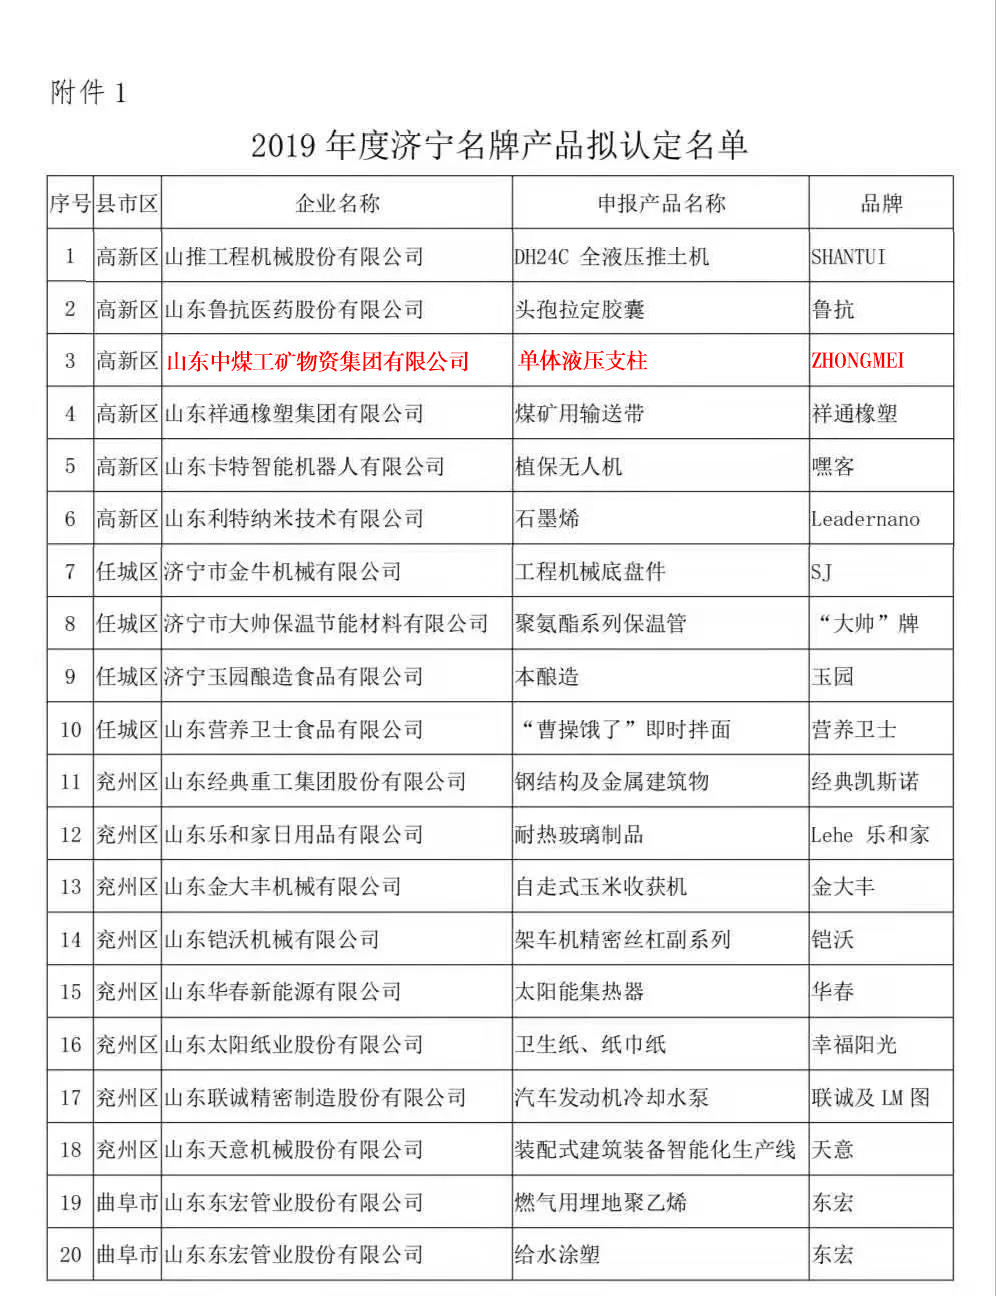 Сердечные поздравления горнодобывающей компании China Coal Group - отдельные гидравлические опоры признаны Jining известными марочными продуктами 2019 года